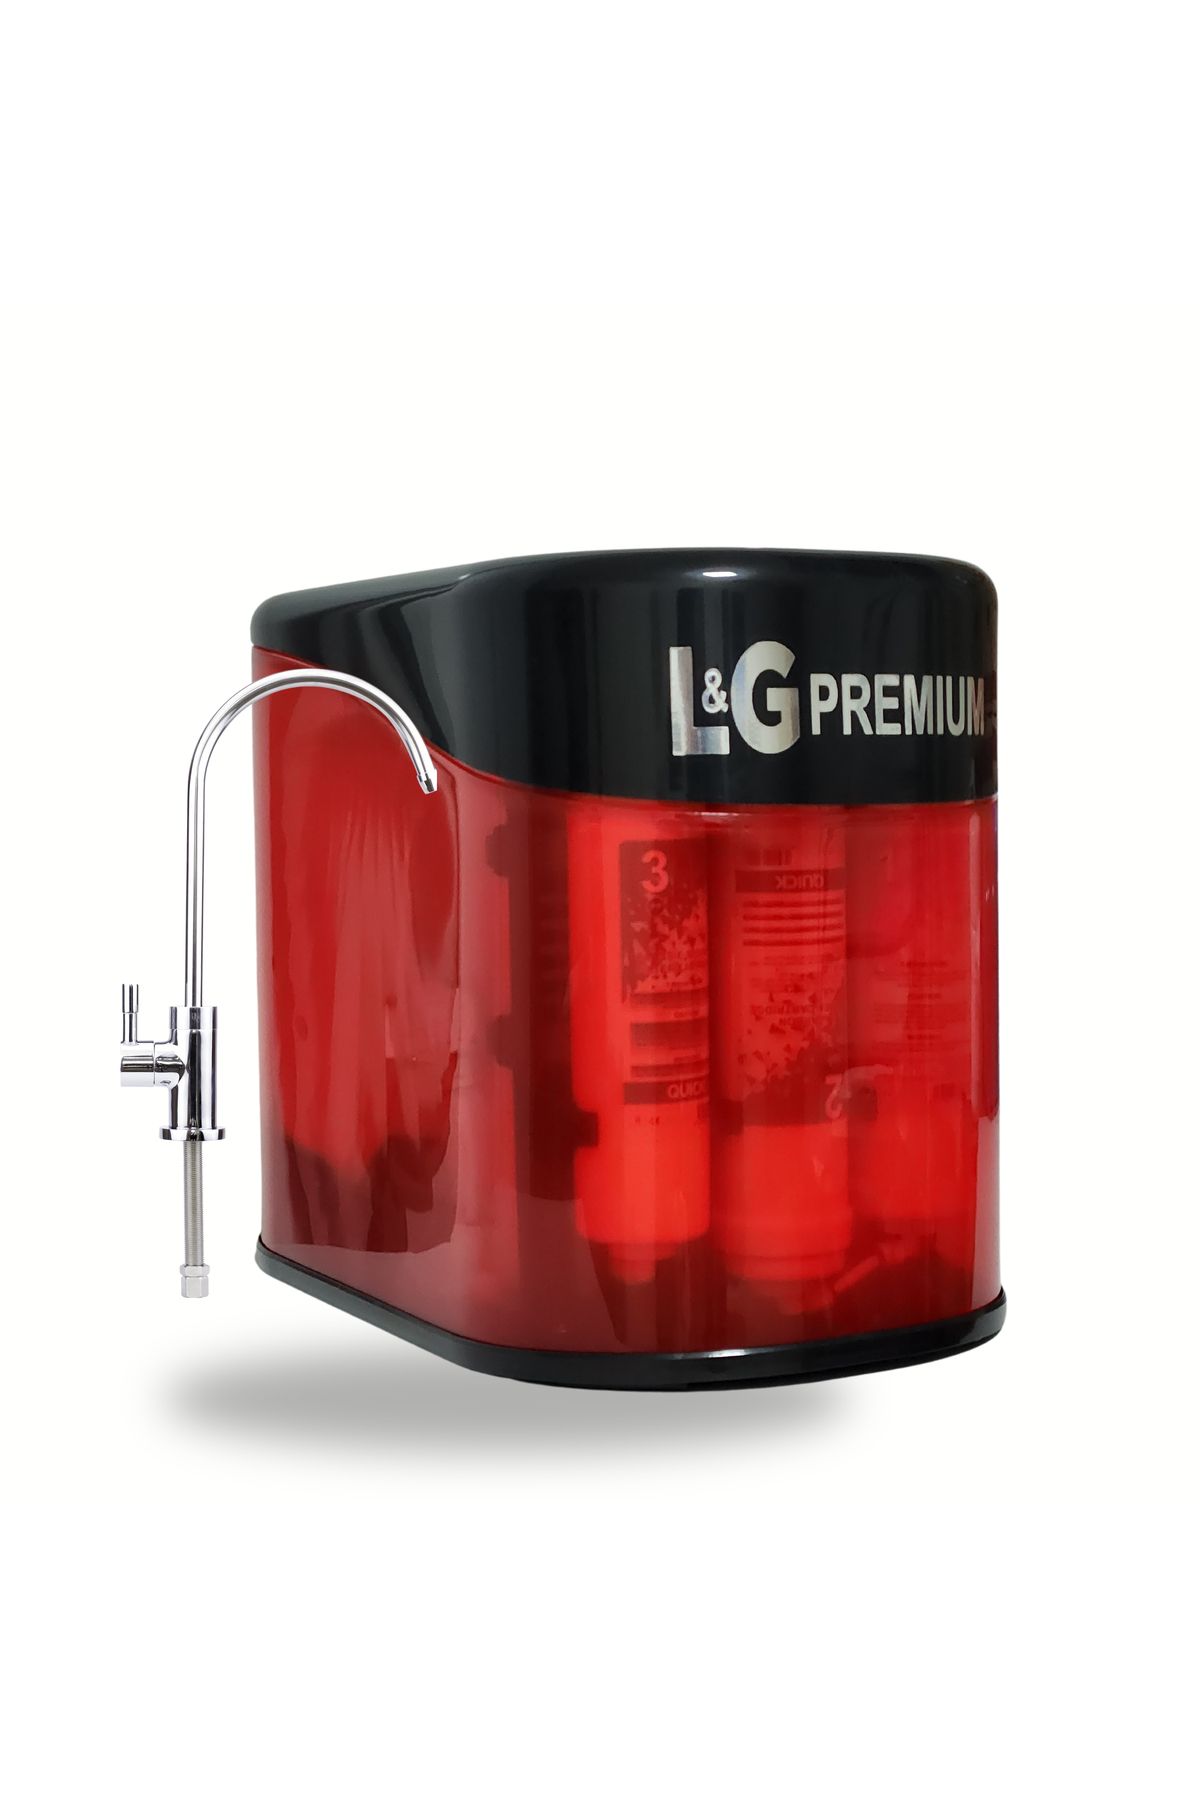 L&G PREMİUM Su Arıtma Cihazı Pompasız 12 Litre 14 Aşamalı Kırmızı